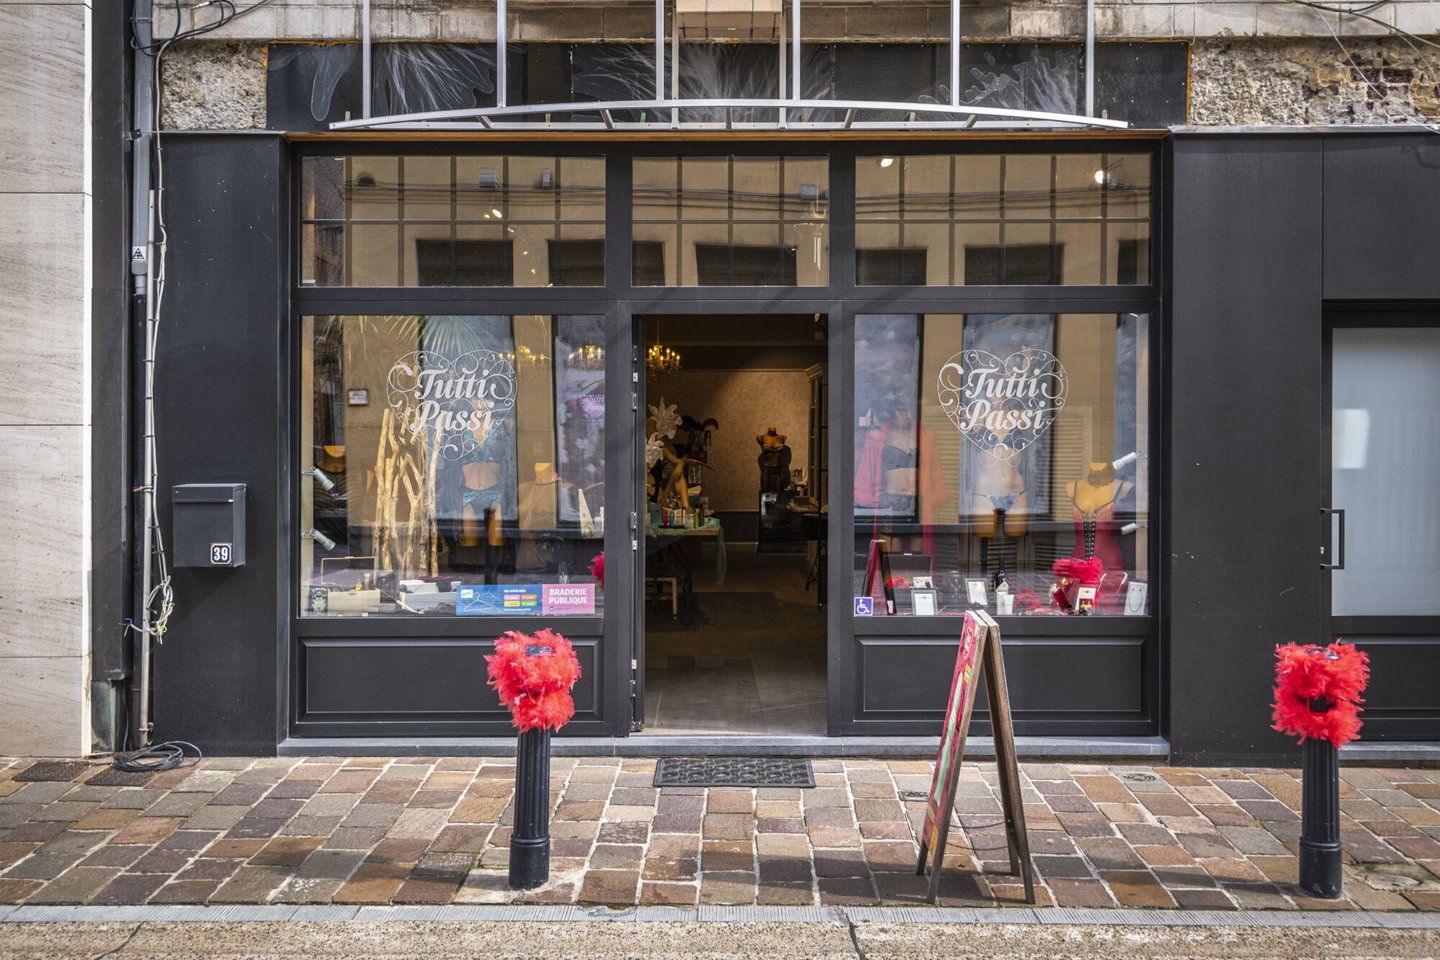 Etalage van lingeriewinkel De Prikkelshop Tutti Passi in Gent